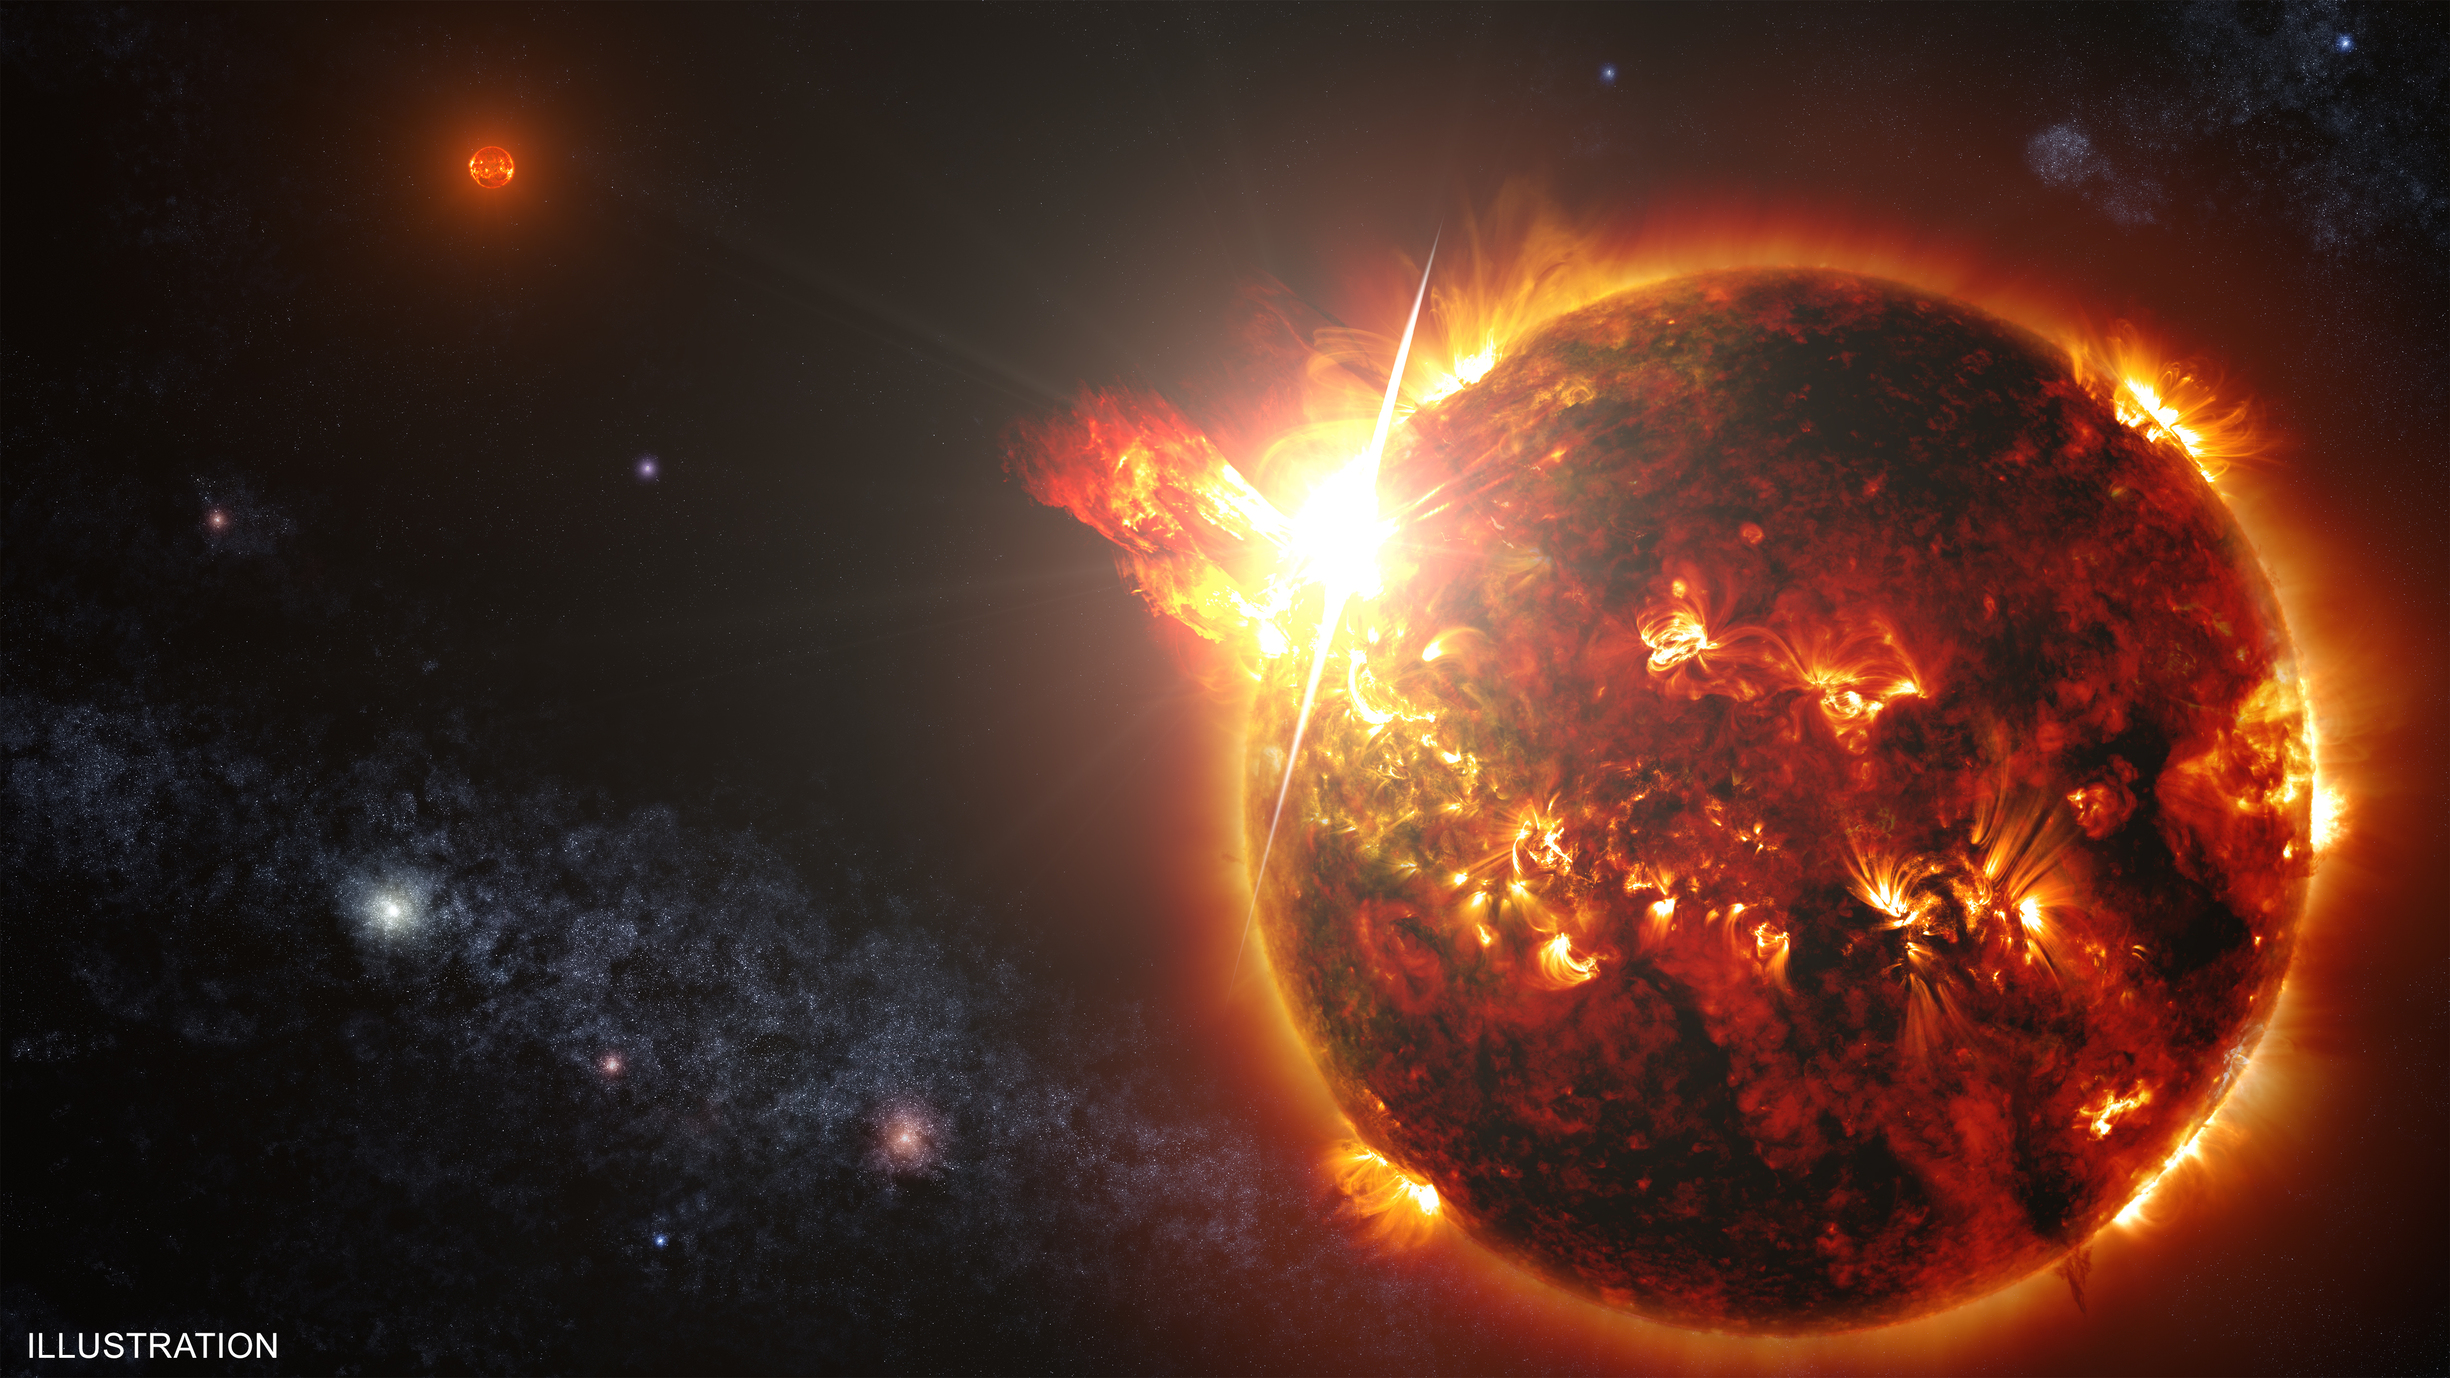 Observan una descomunal erupción por primera vez en una estrella que no es el Sol